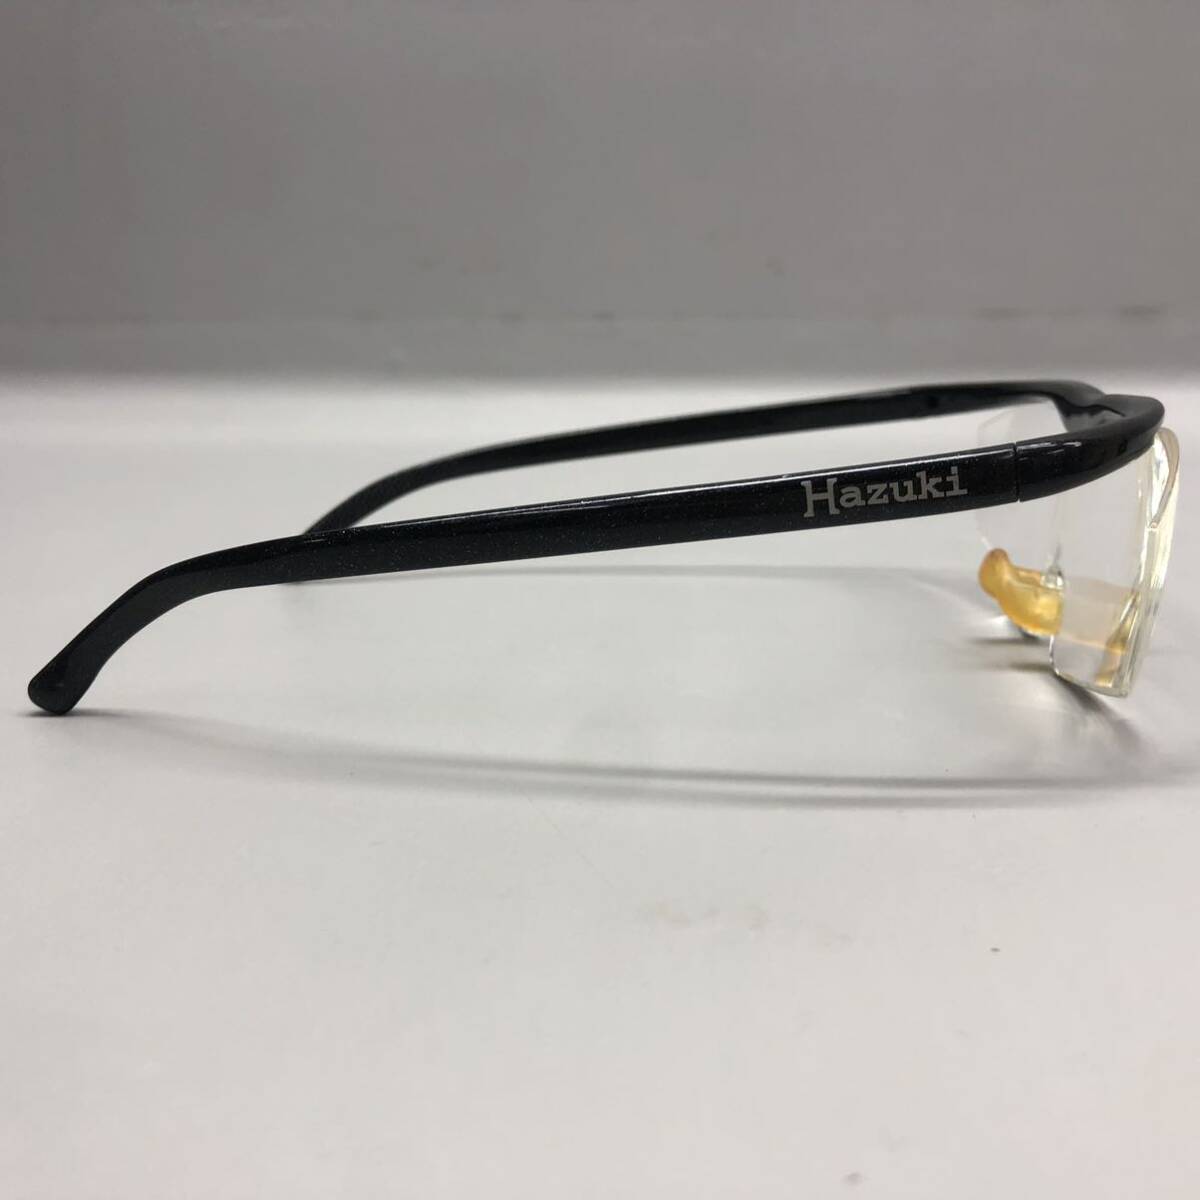 T# Hazuki Huzuki лупа LS 1.6X увеличительное стекло Large размер чёрный ламе бесцветные линзы 1.6 раз корпус только очки при дальнозоркости очки очки для мужчин и женщин б/у товар 